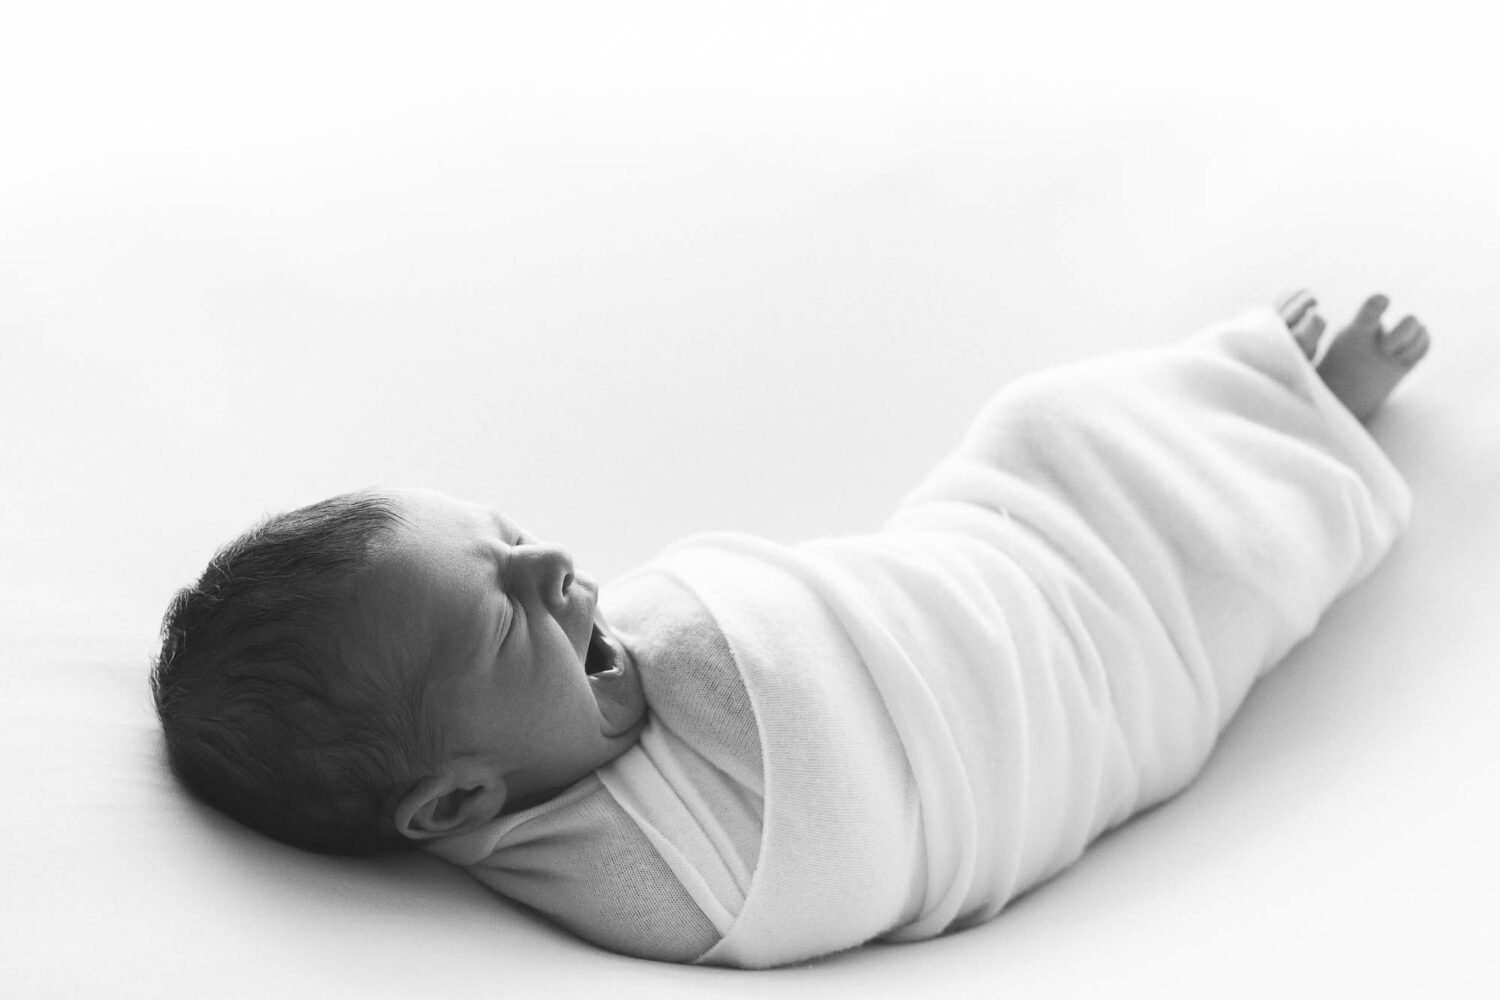 schwarz weiß Bild eines schlafenden Babies in einem Wrap gehüllt